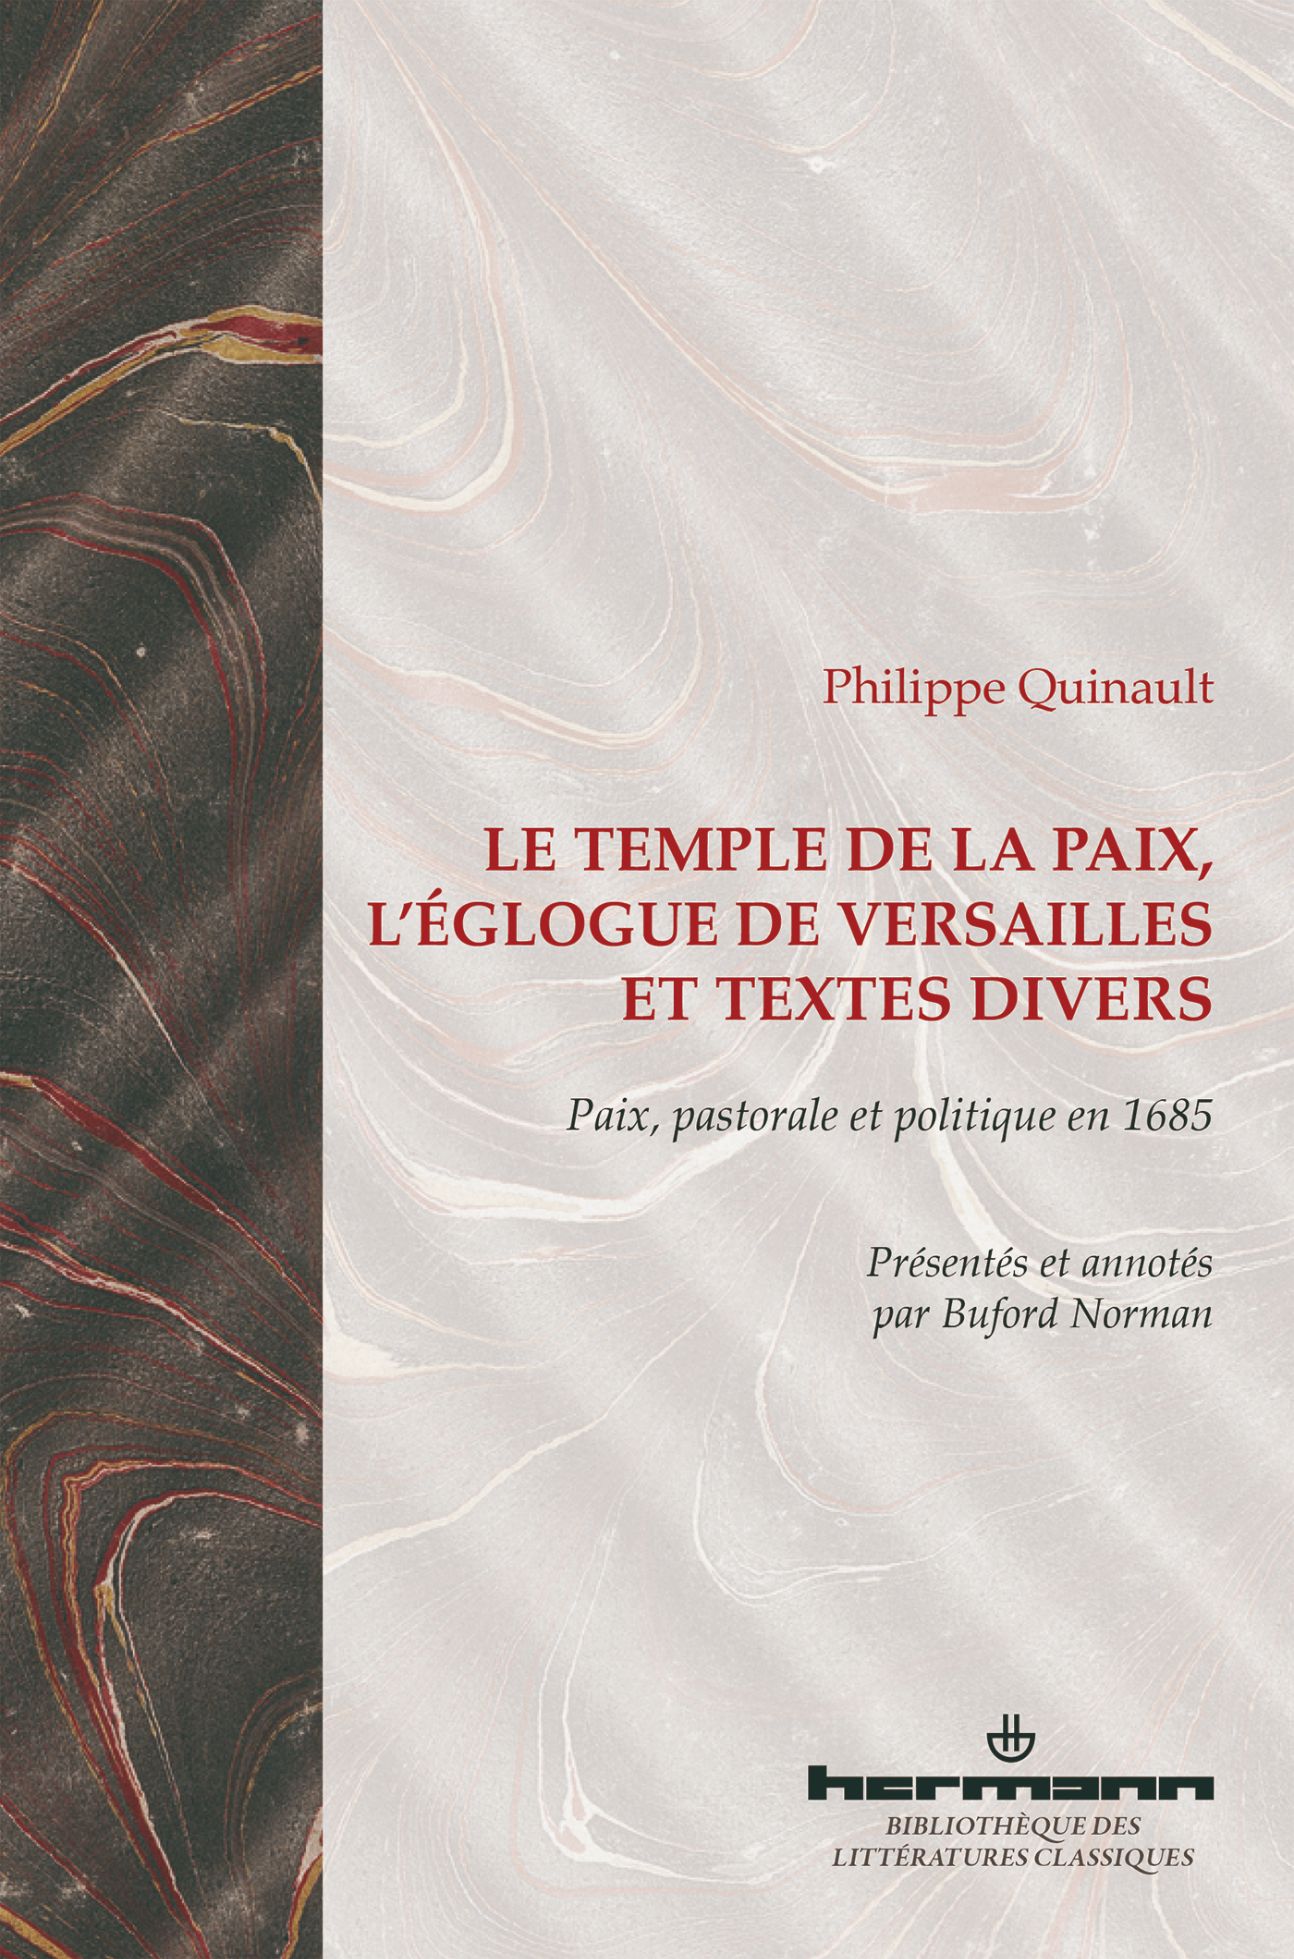 Philippe Quinault, Le Temple de la Paix, L'Églogue de Versailles et textes divers : Paix, pastorale et politique en 1685.